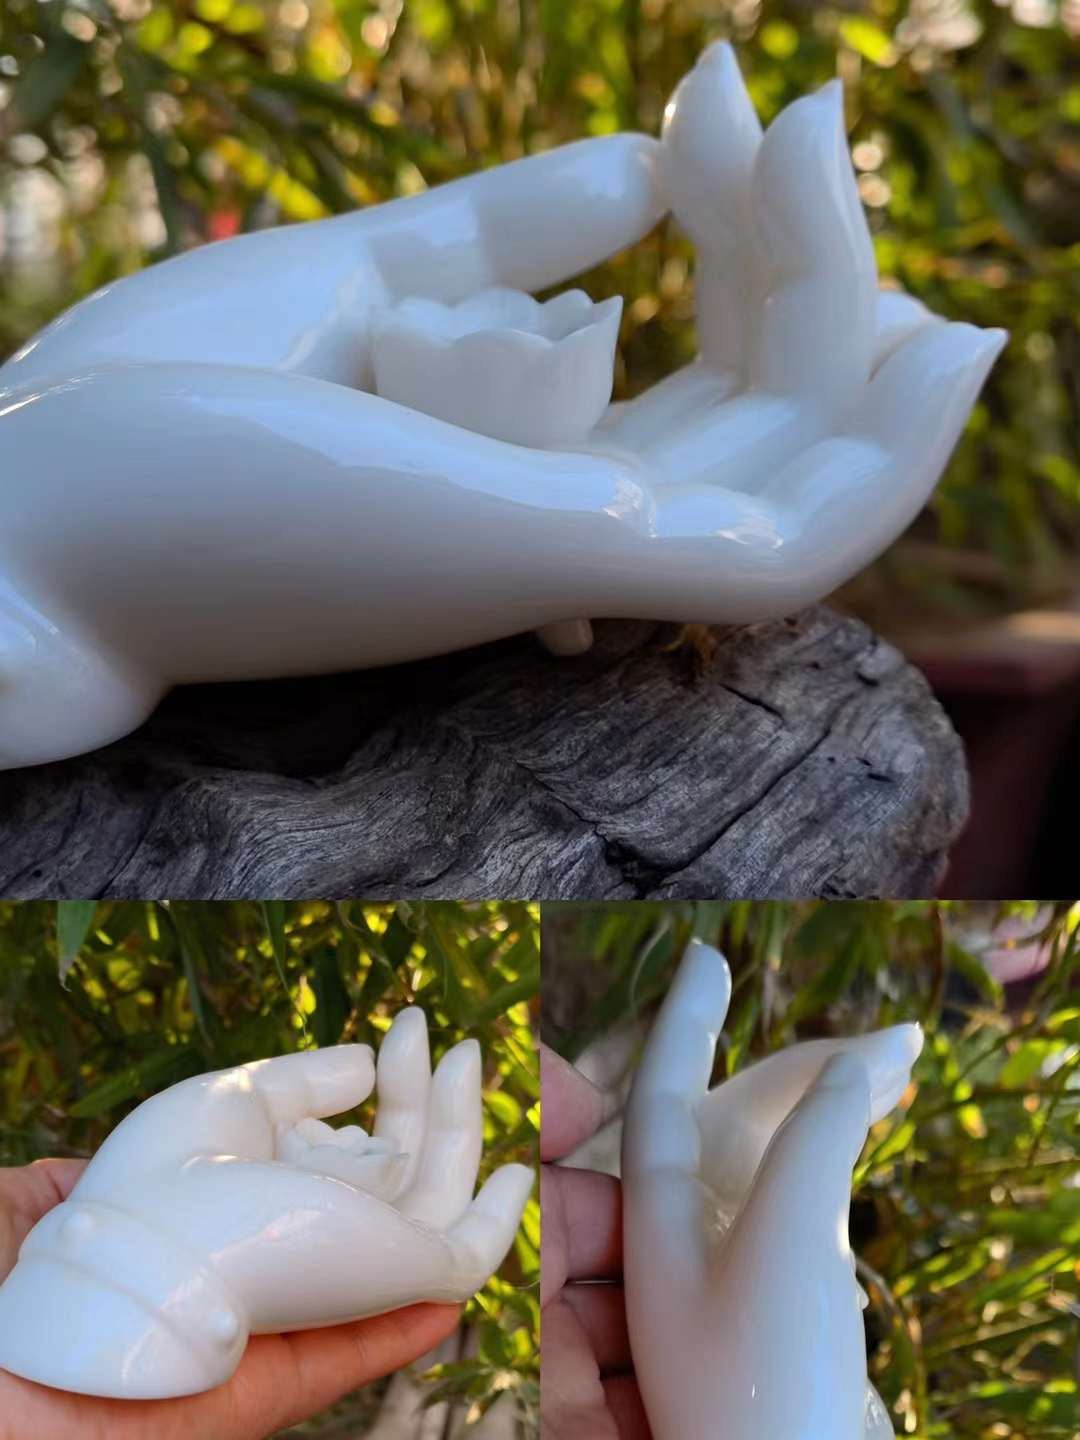 White Porcelain Buddha Hand Incense Holder